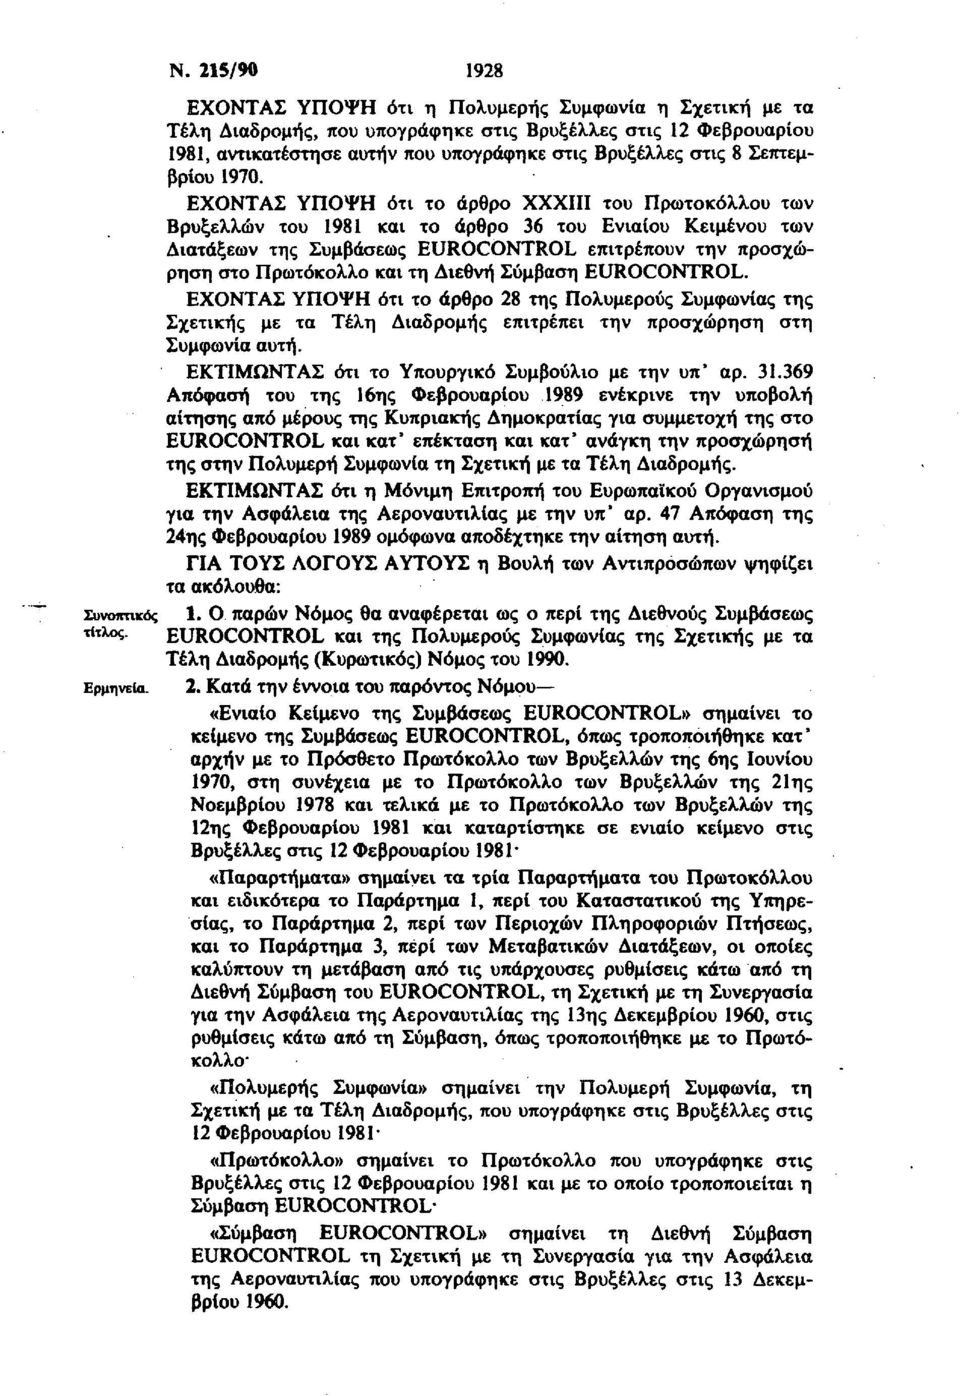 ΕΧΟΝΤΑΣ ΥΠΟΨΗ ότι το άρθρο XXXIII του Πρωτοκόλλου των Βρυξελλών του 1981 και το άρθρο 36 του Ενιαίου Κειμένου των Διατάξεων της Συμβάσεως EUROCONTROL επιτρέπουν την προσχώρηση στο Πρωτόκολλο και τη